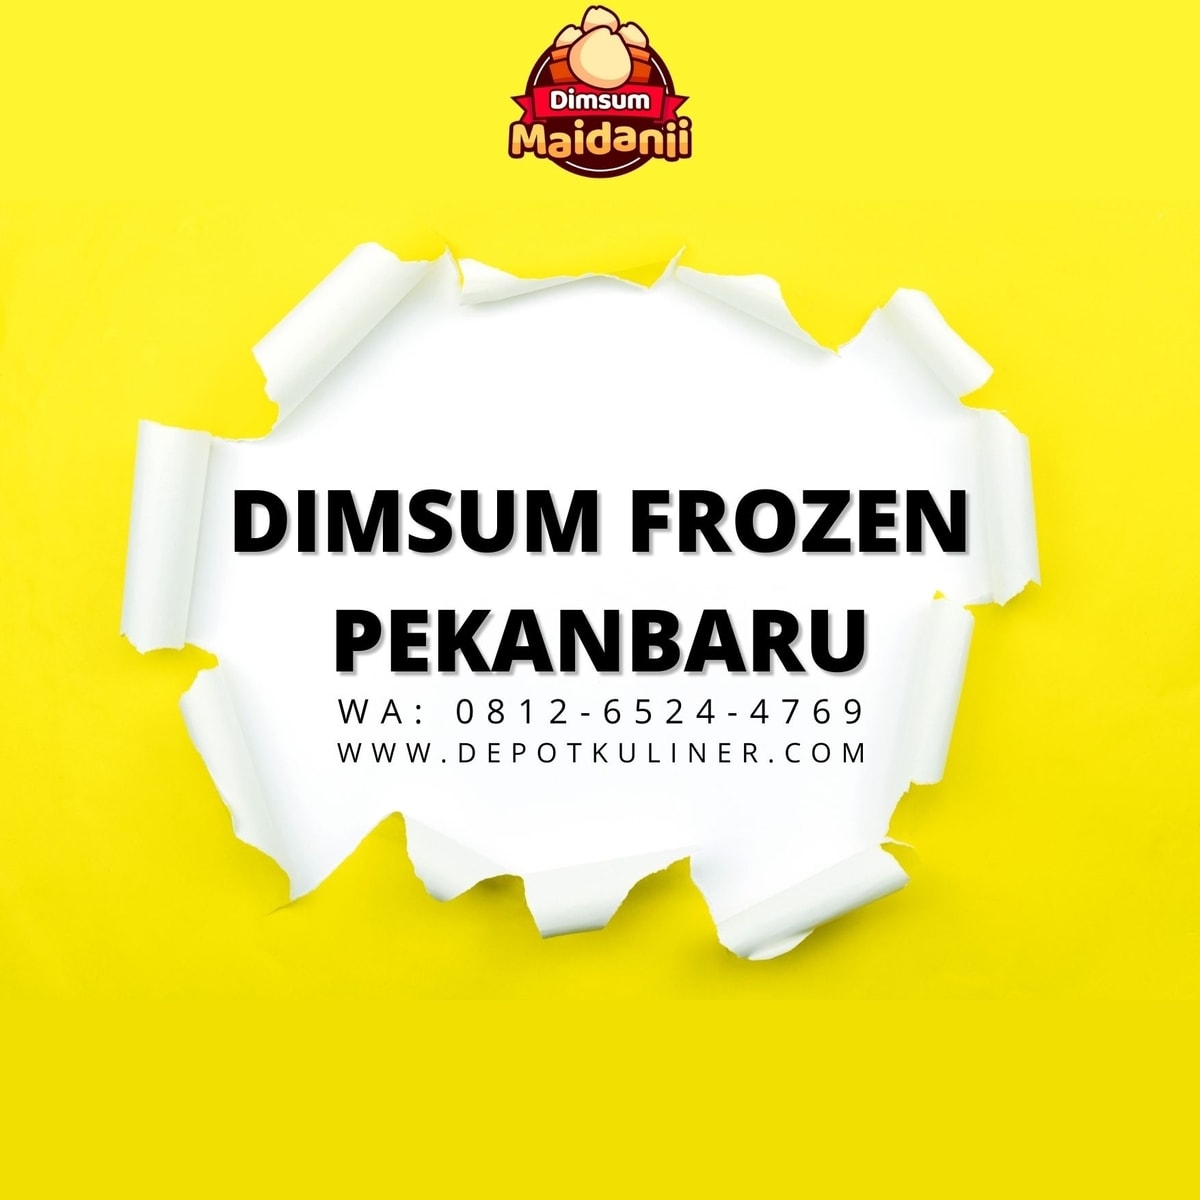 HARGA TERJANGKAU, Call 0812-6524-4769, Dimsum Frozen Pekanbaru